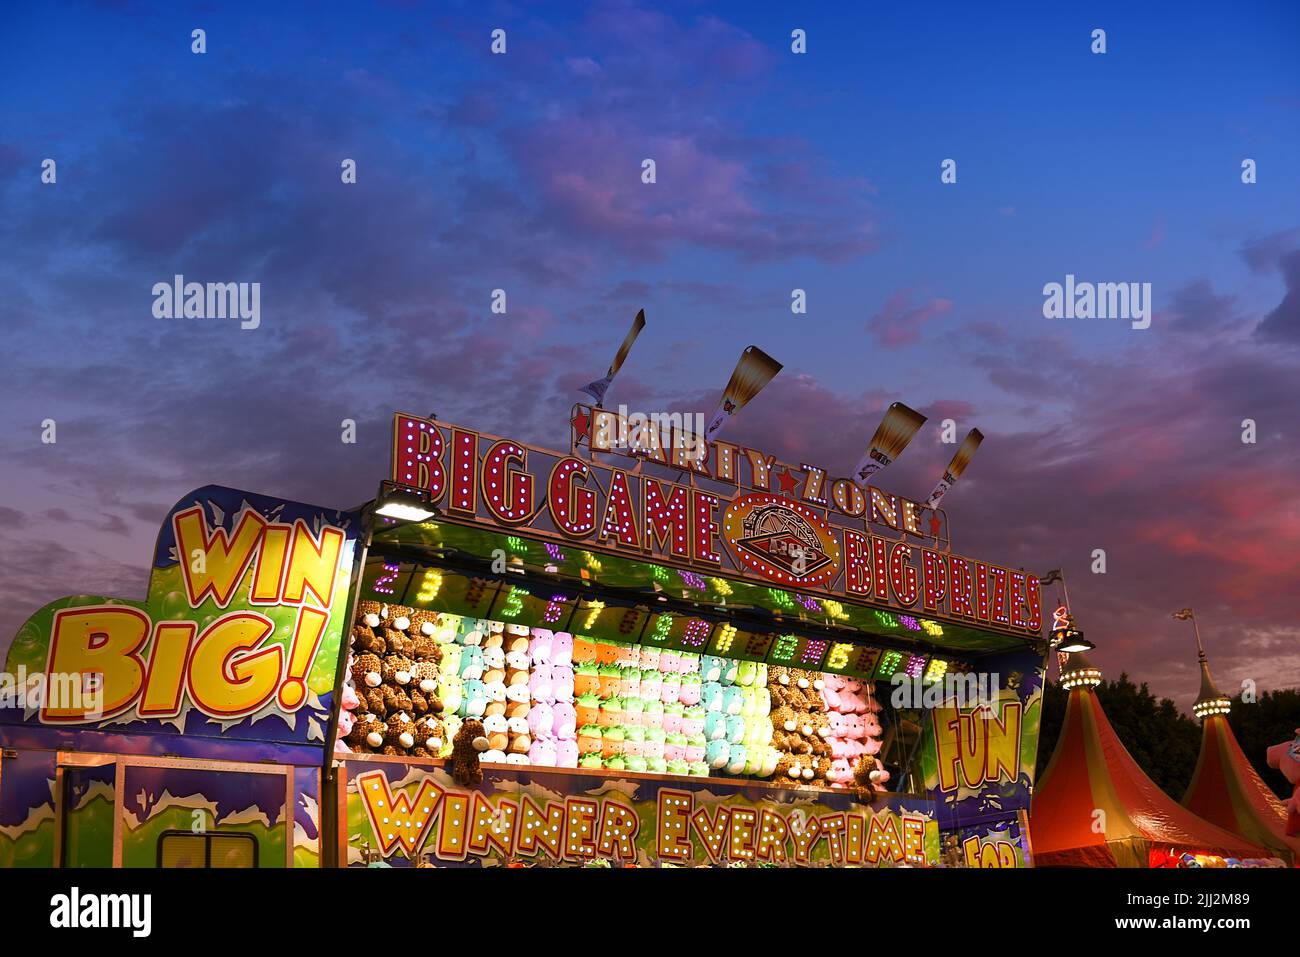 COSTA MESA, KALIFORNIEN - 20 JUL 2022: Party Zone Karnevalsspiel auf der Orange County Fair mit blauem Sonnenuntergang Himmel. Stockfoto